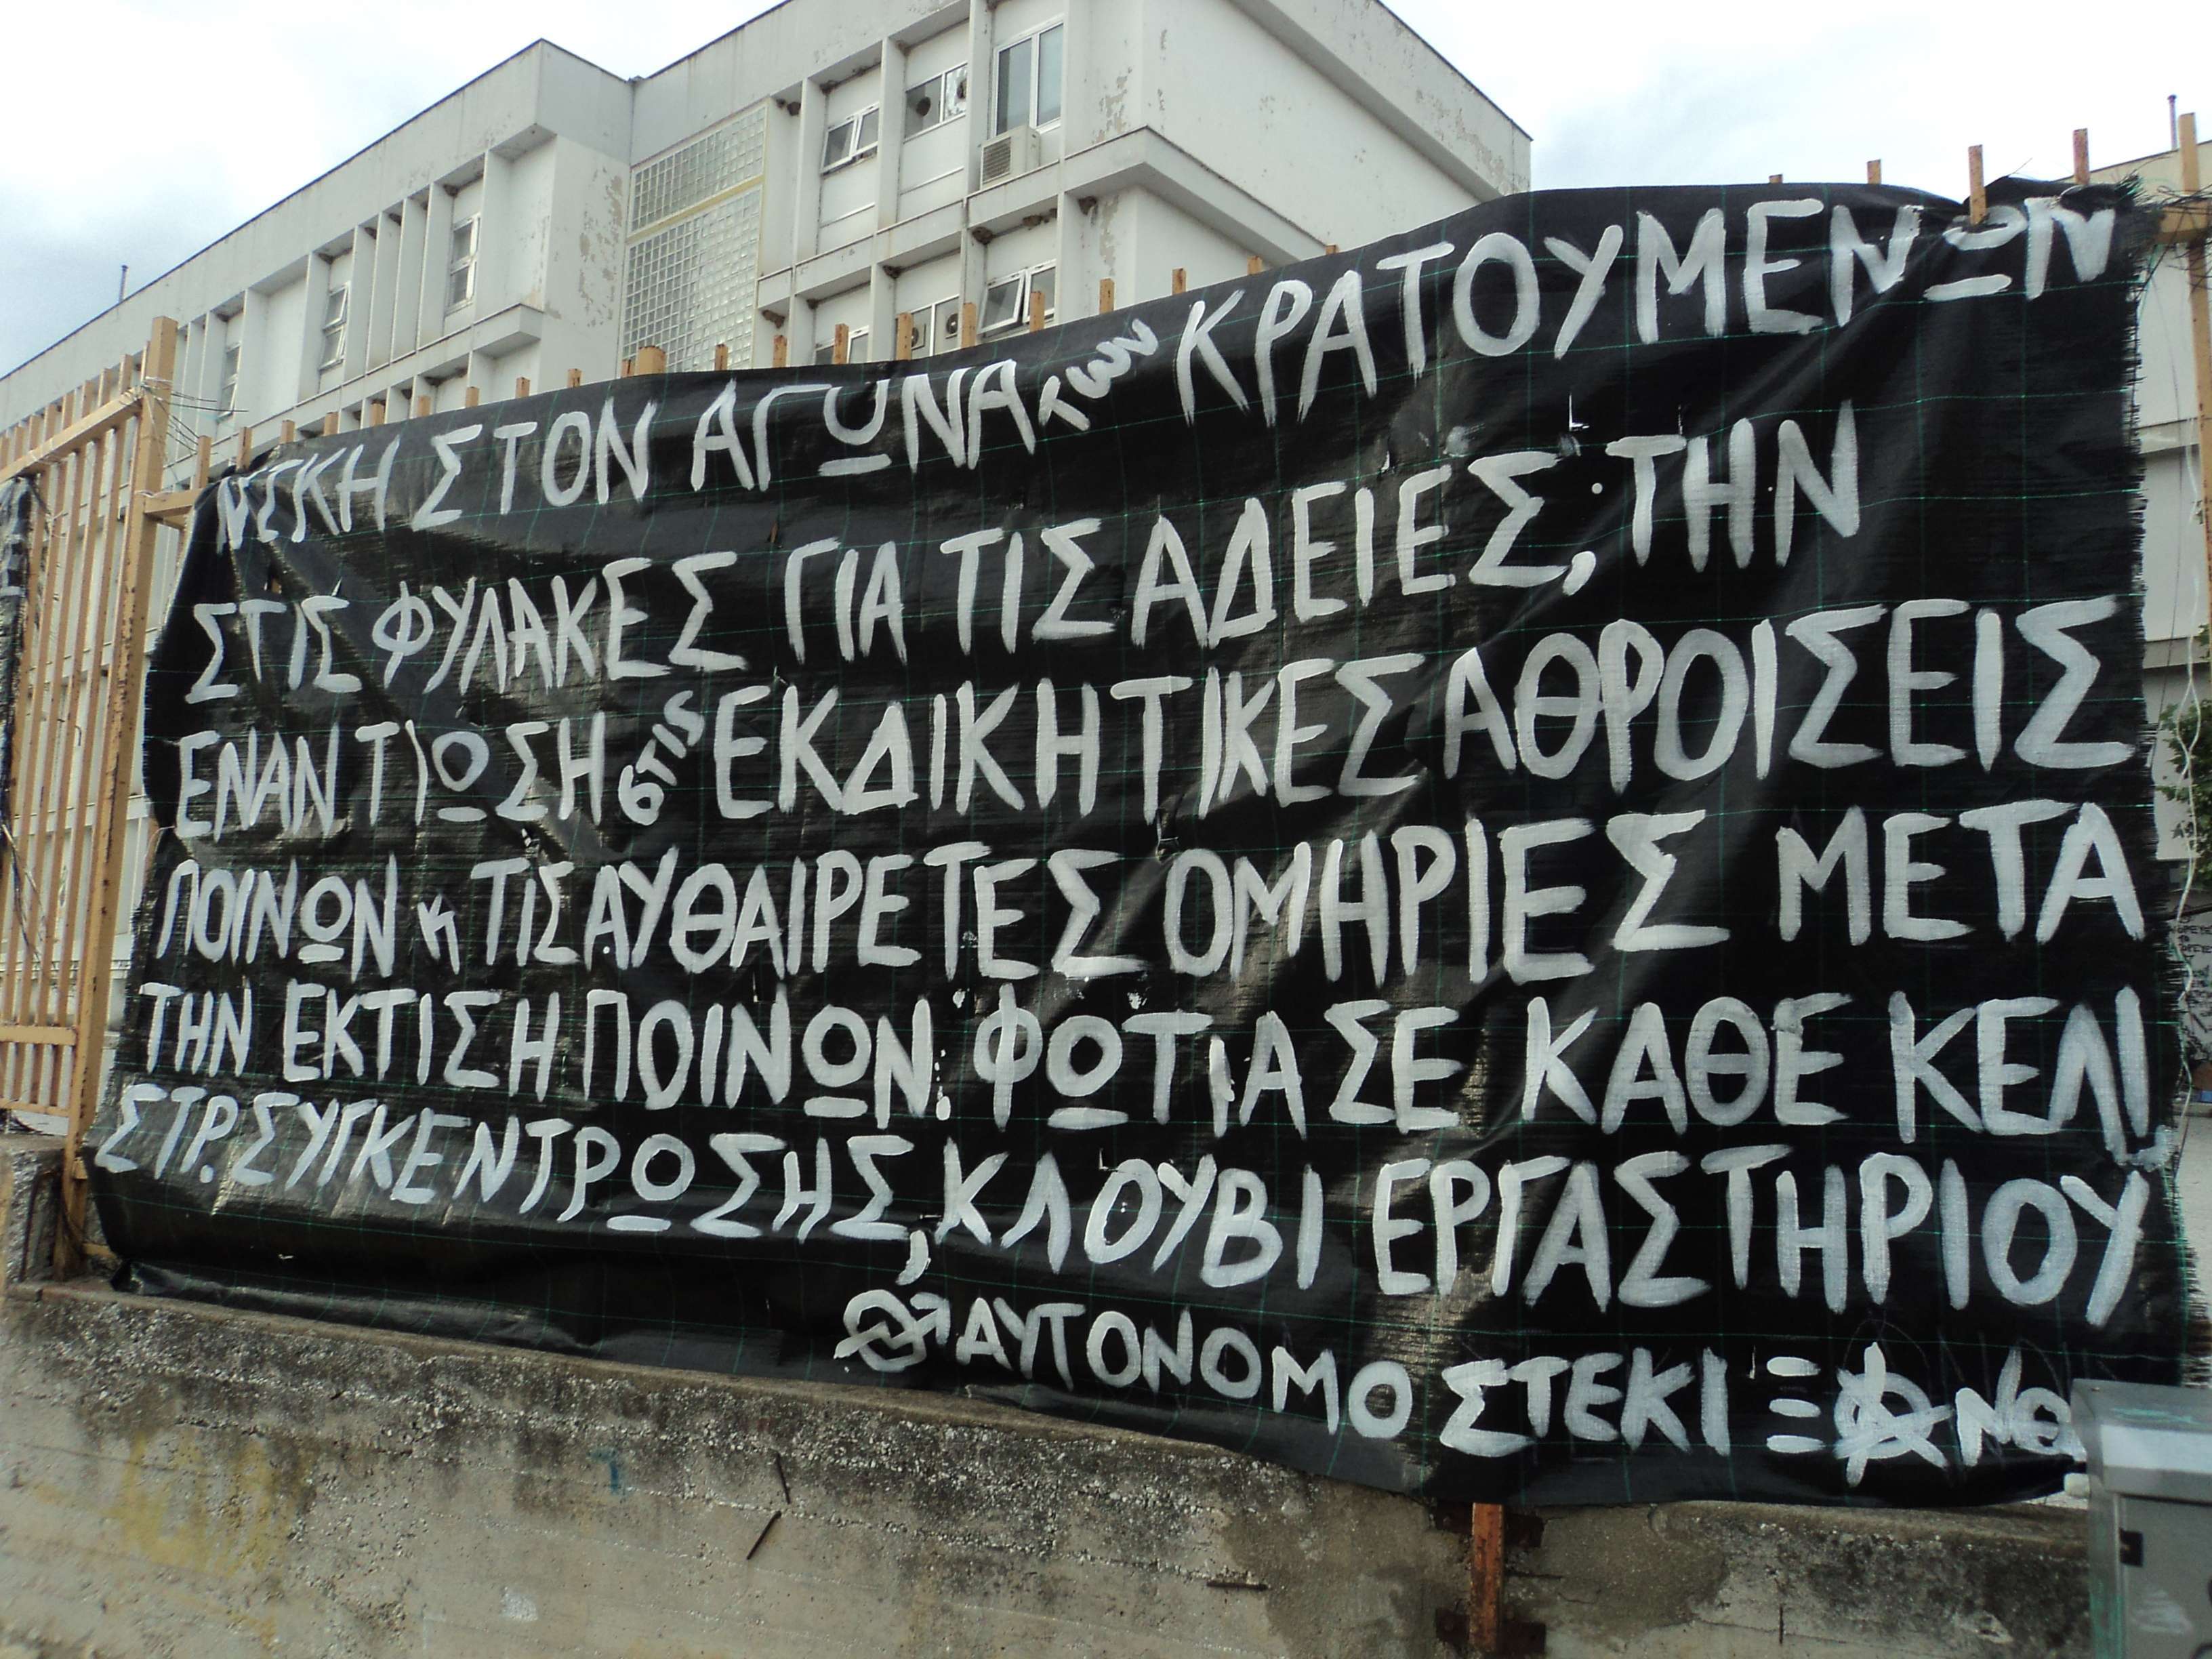 Αυτόνομο Στέκι, Ξάνθη: Πανό αλληλεγγύης στον αγώνα των κρατουμένων στις ελληνικές φυλακές